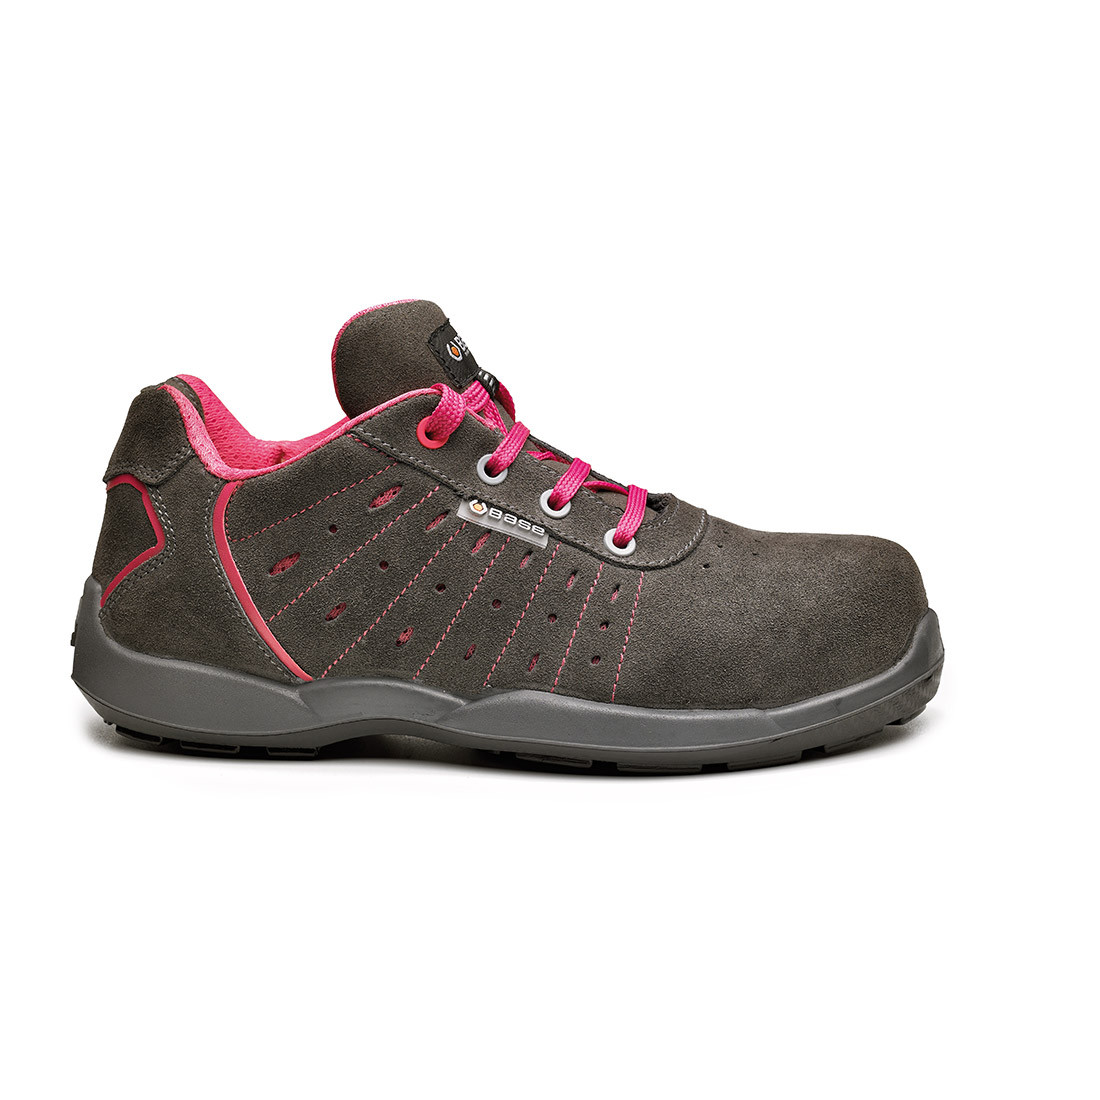 Pantofi Attitude S1P SRC - Incaltaminte de protectie | Bocanci, Pantofi, Sandale, Cizme